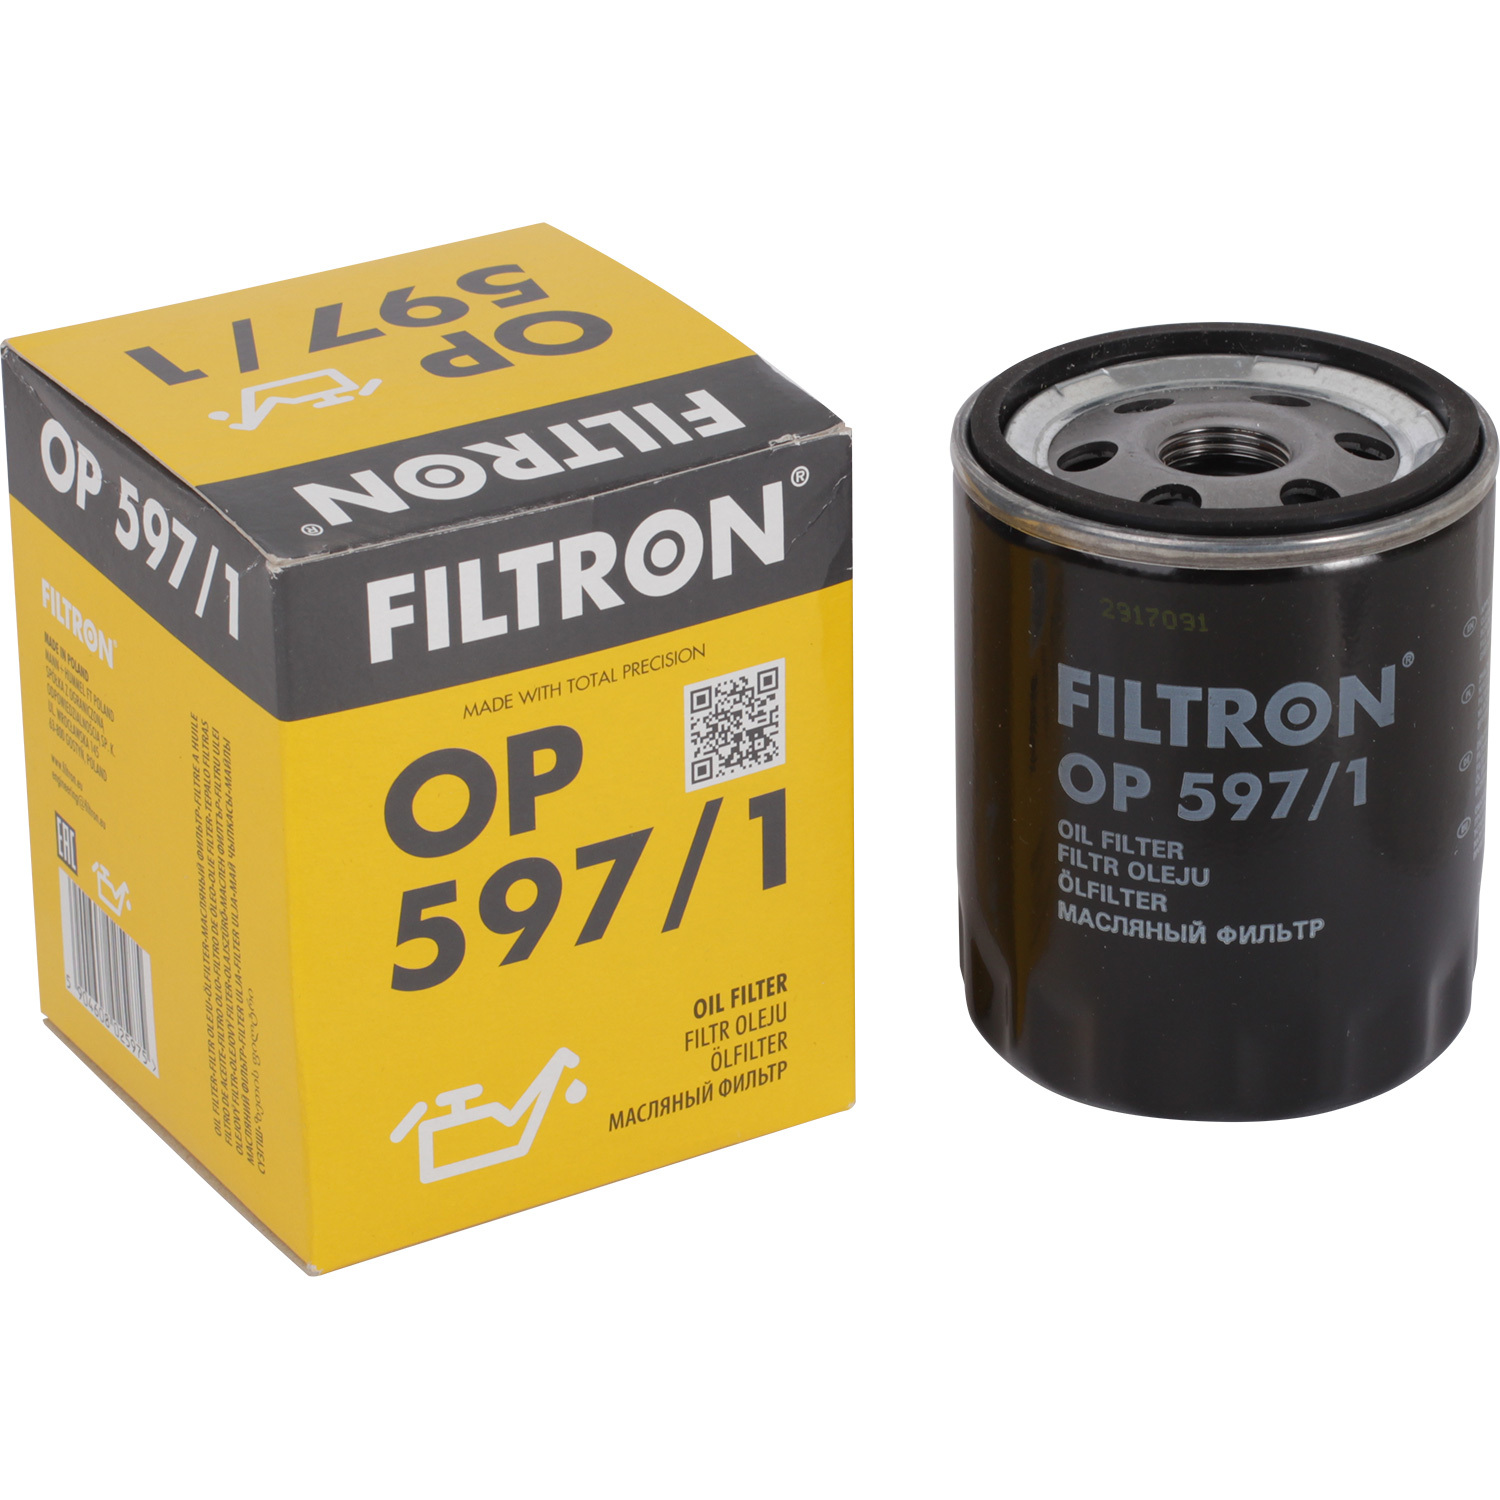 Фильтры Filtron Фильтр масляный Filtron OP5971 фильтры filtron фильтр масляный filtron op617